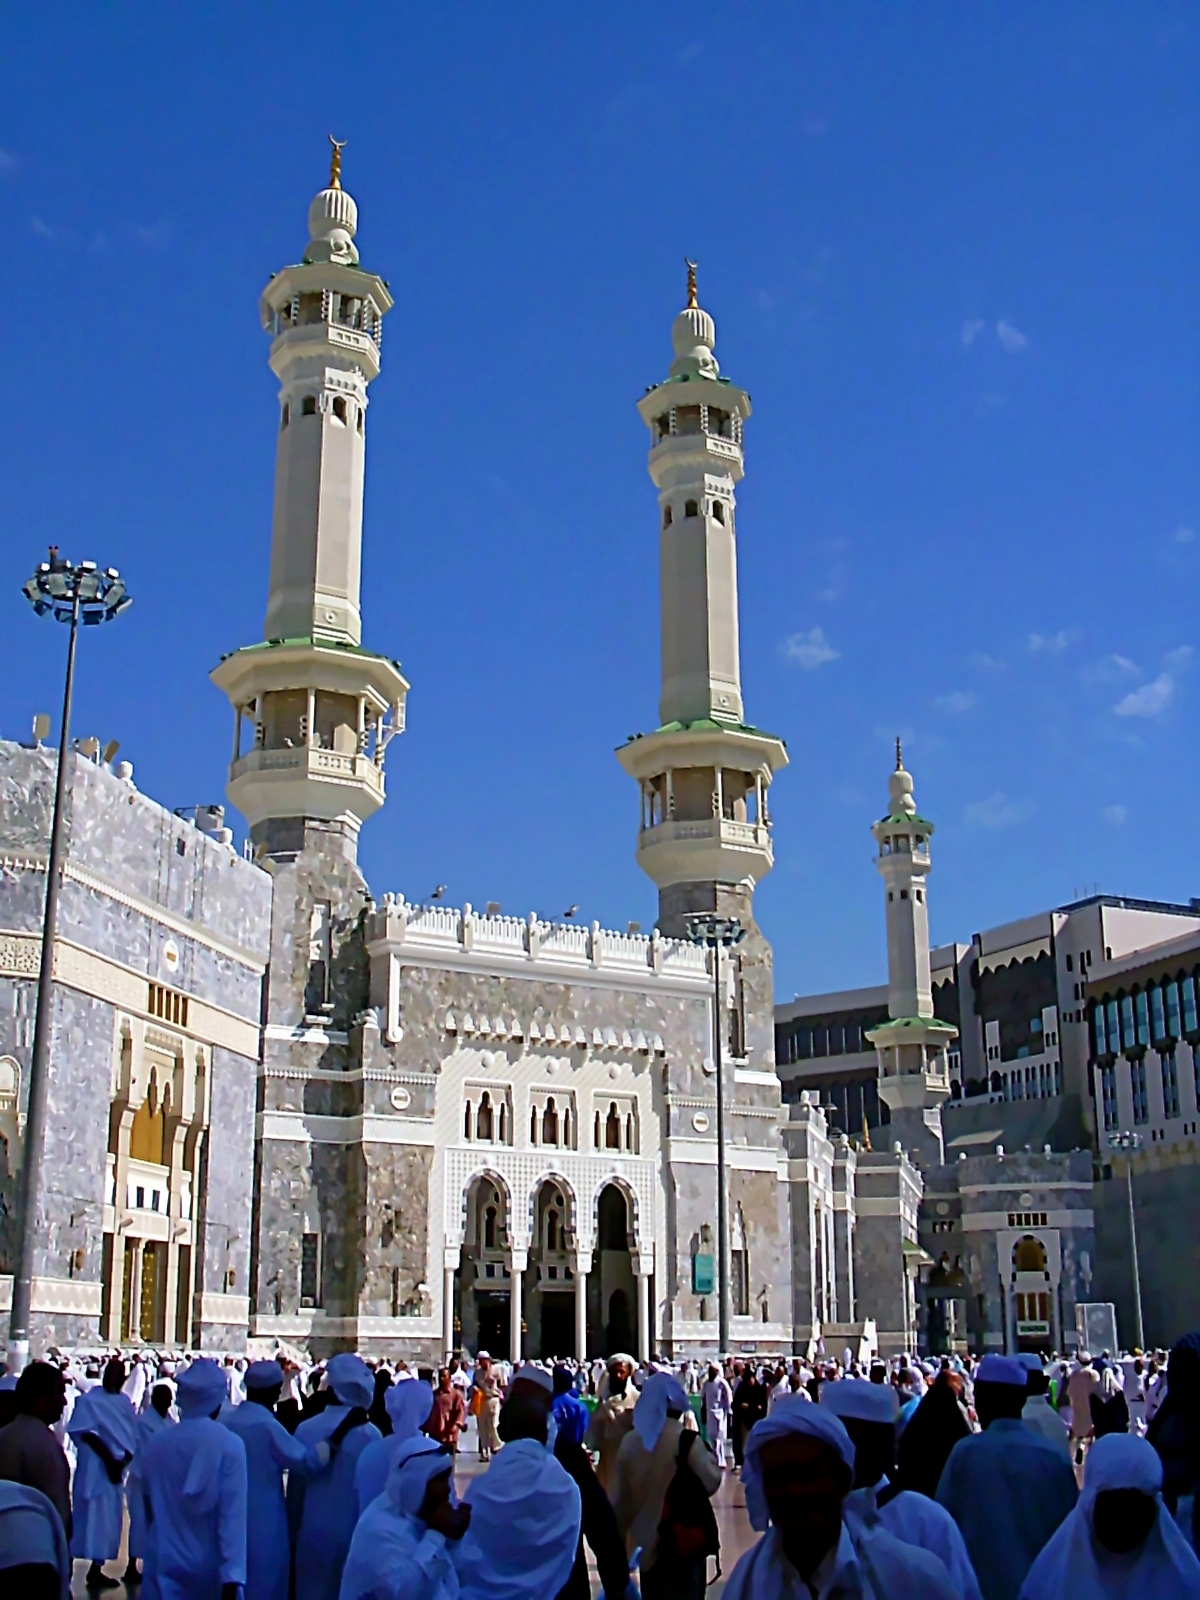 Selamat Menyambut Hari Raya Haji / Korban / 'Idil Adha 